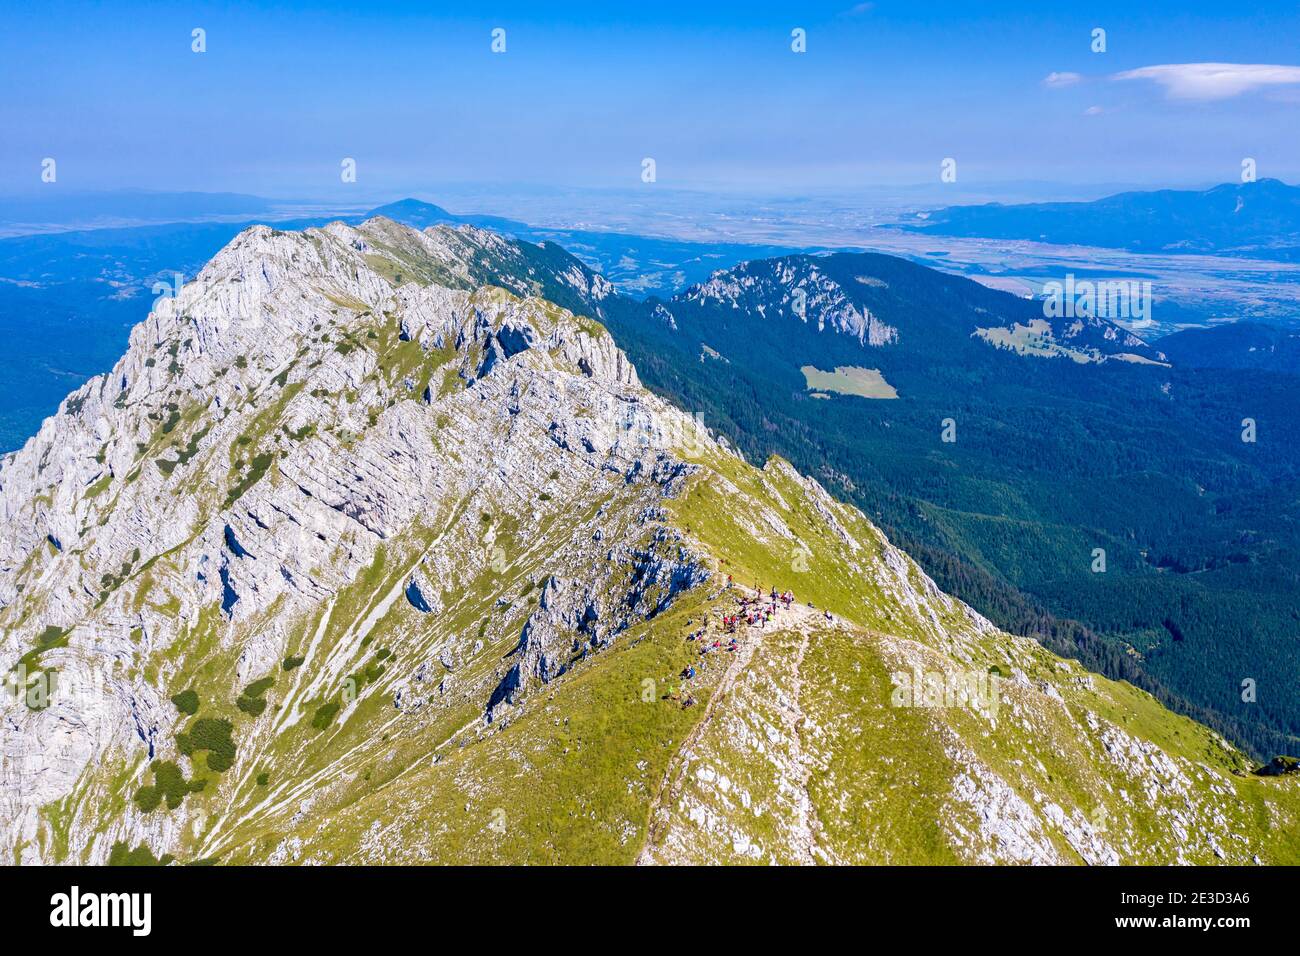 Randonneurs sur un sommet rocheux des Carpates roumains, scène estivale dans le massif de Piatra Craiului et vue depuis le sommet. Banque D'Images